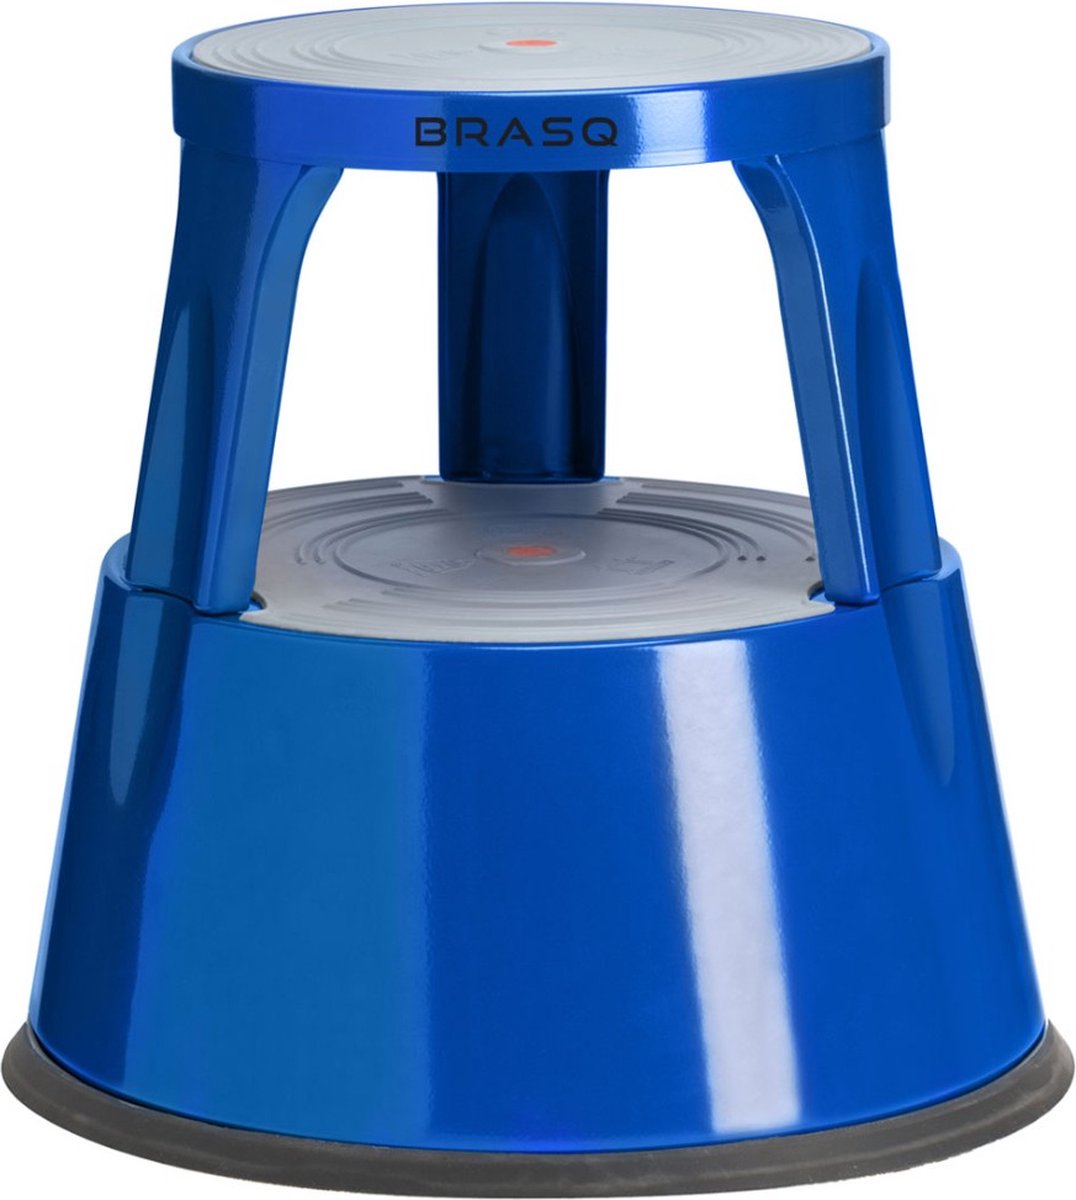 BRASQ Opstapkrukje Premium Blauw ST300, draagvermogen 150 kg, opstapkruk, olifantenvoet, kantoorkruk, trap, roltrap, kruk